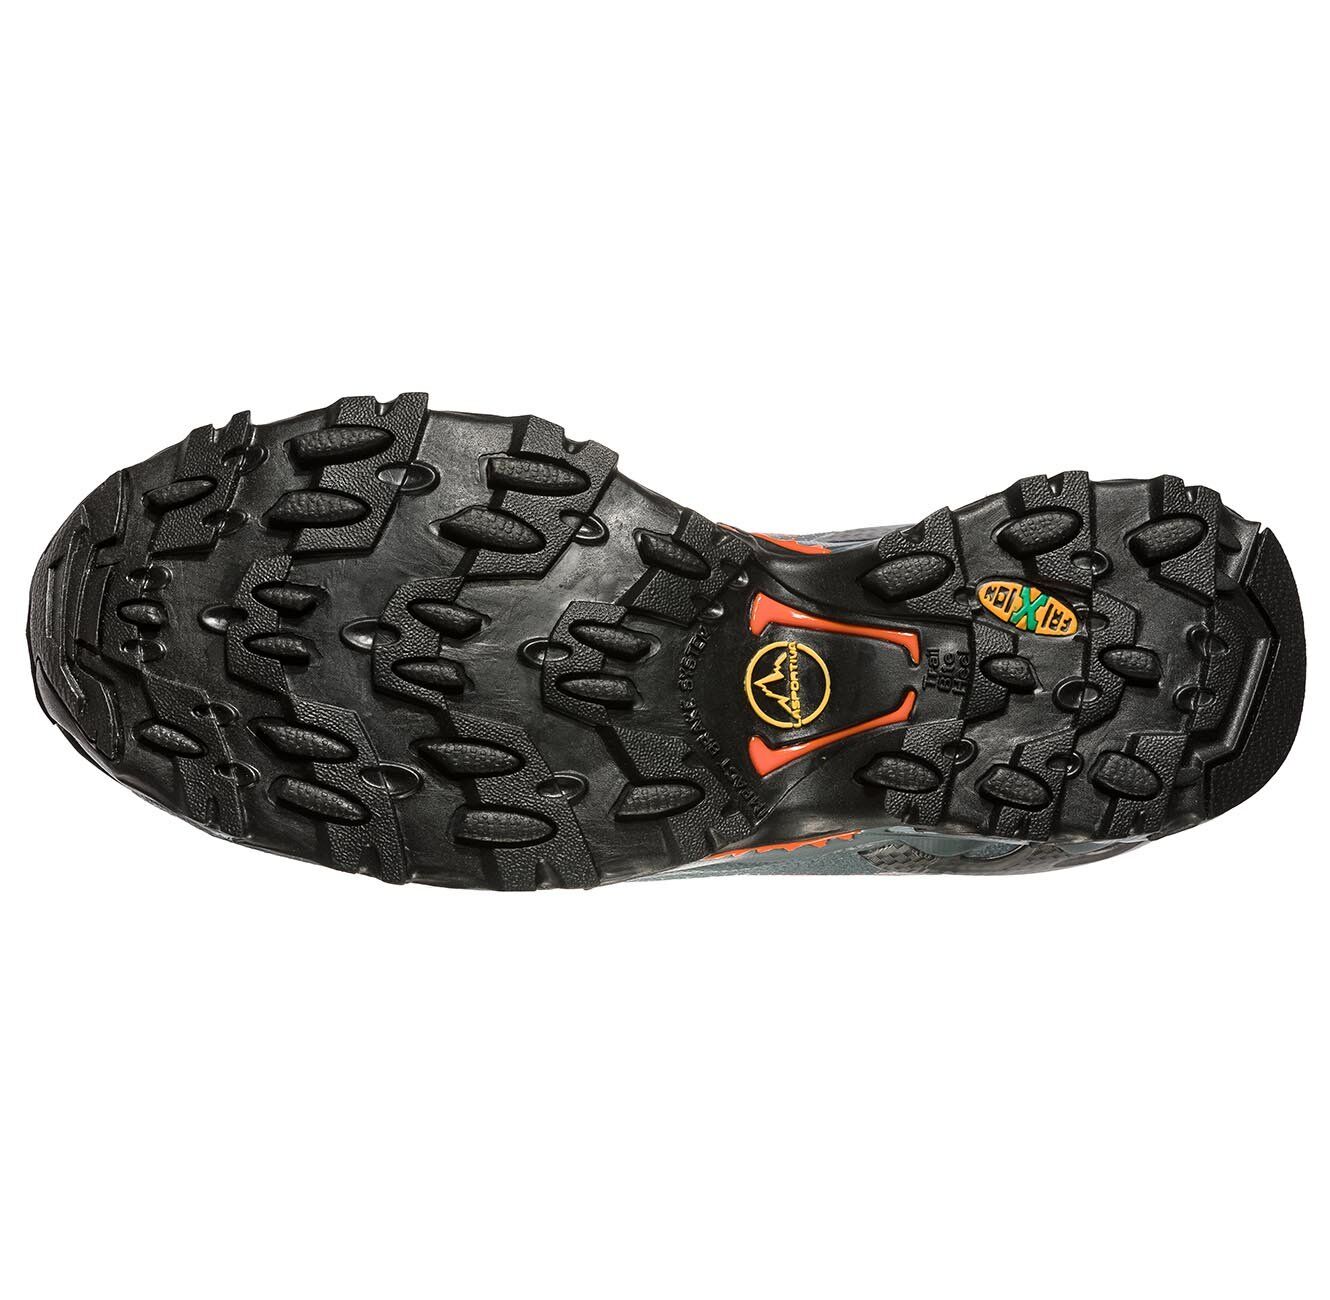 La Sportiva - Ultra Raptor - Trail Running shoes - Men's